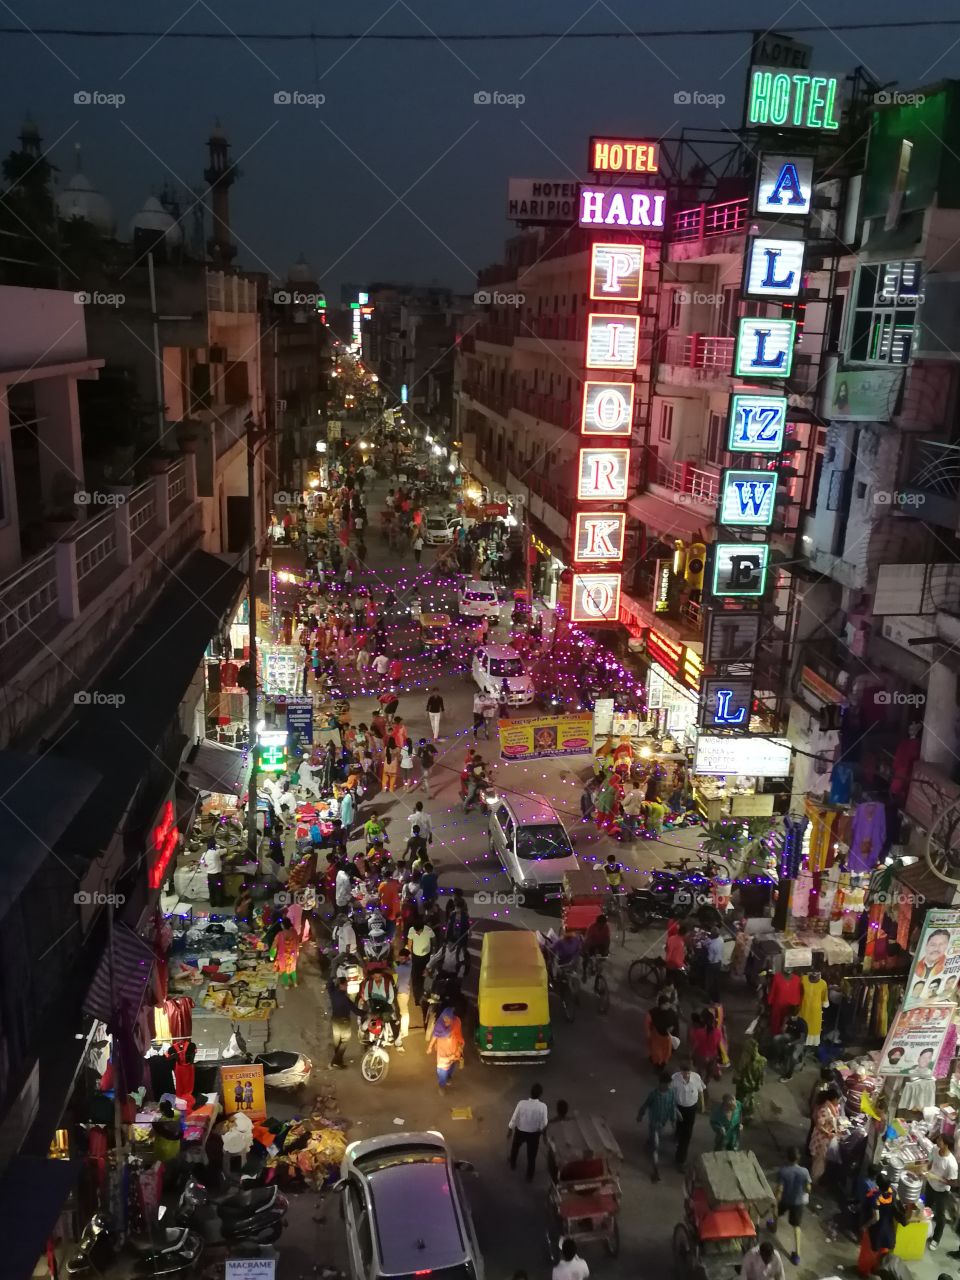 Delhi street